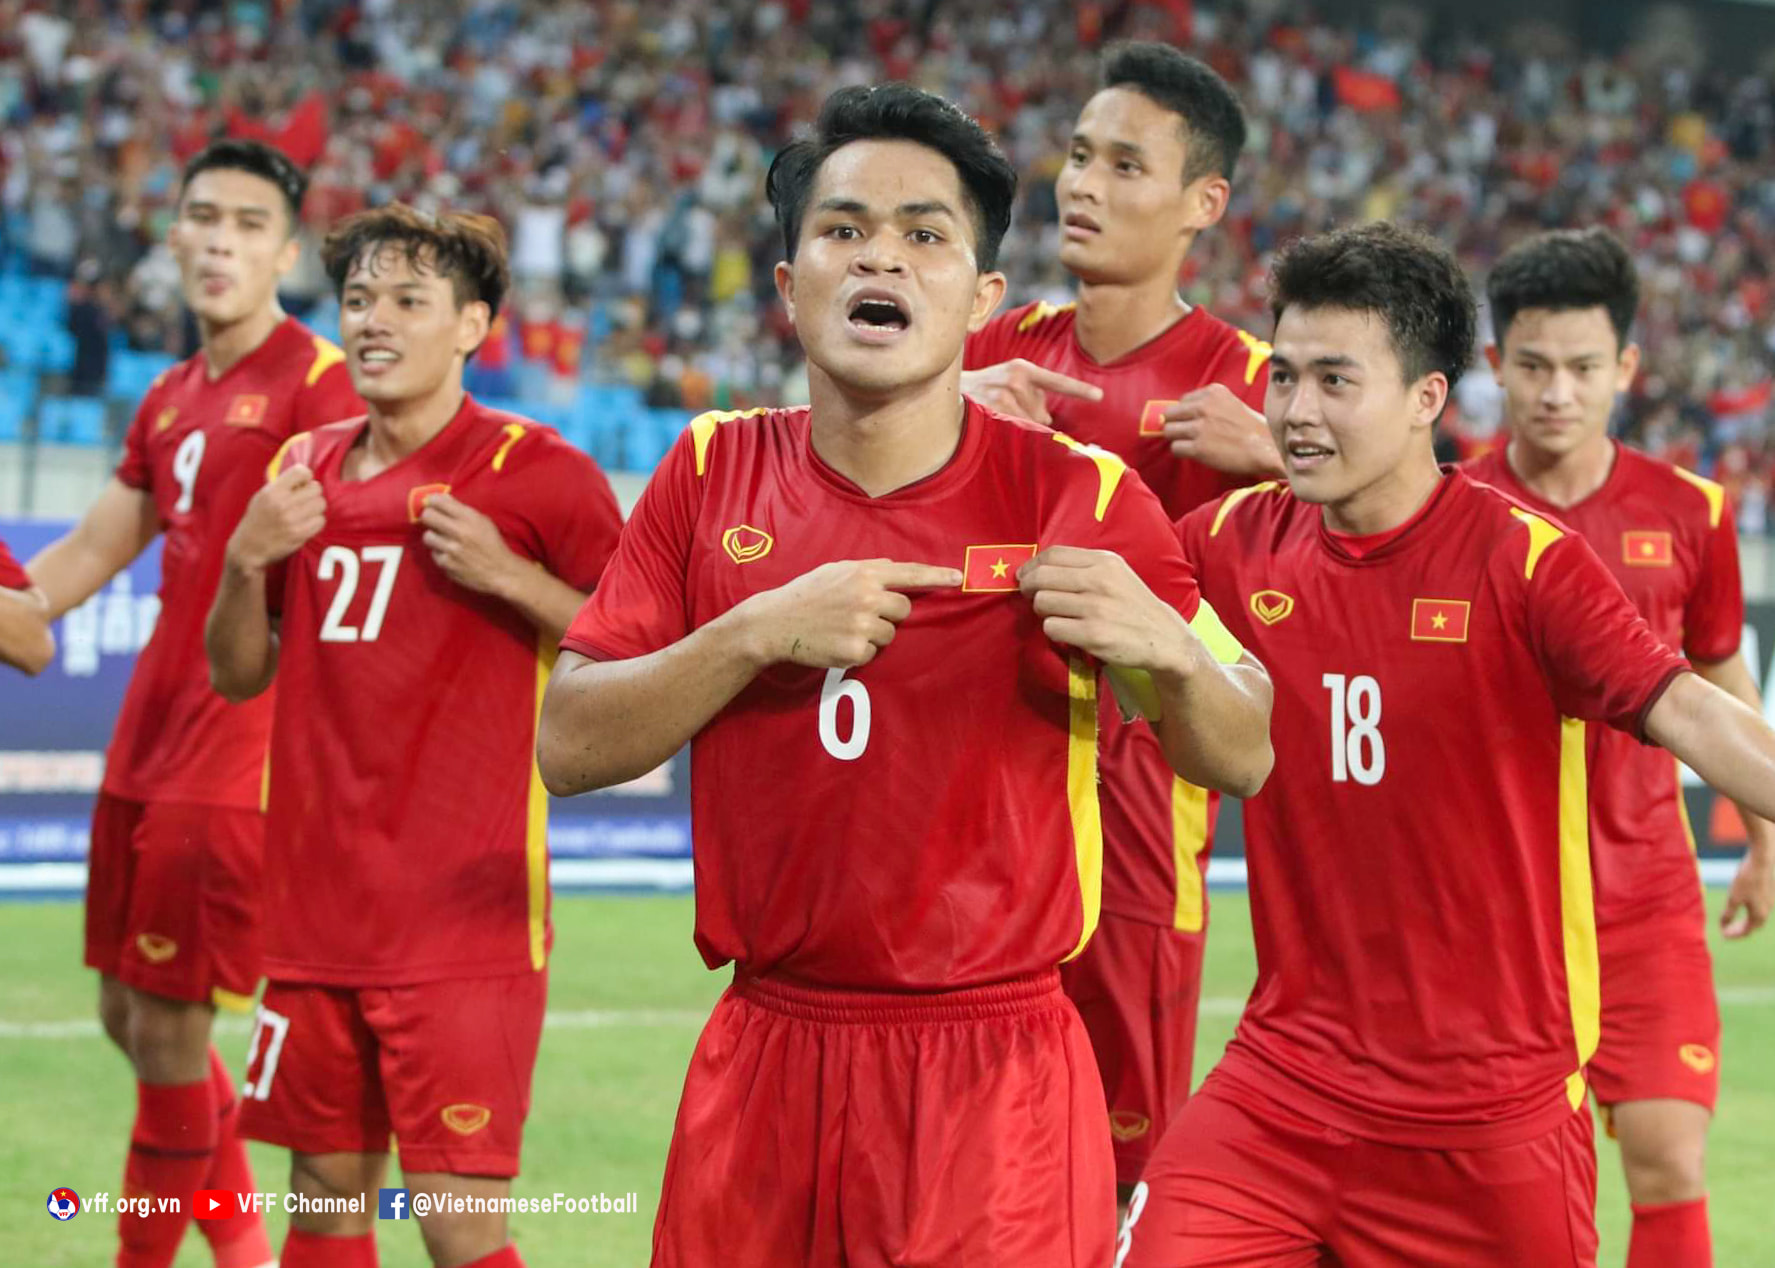 U23 Việt Nam dự Dubai Cup 2022, HLV Park Hang-seo dùng đội hình nào? - Ảnh 1.